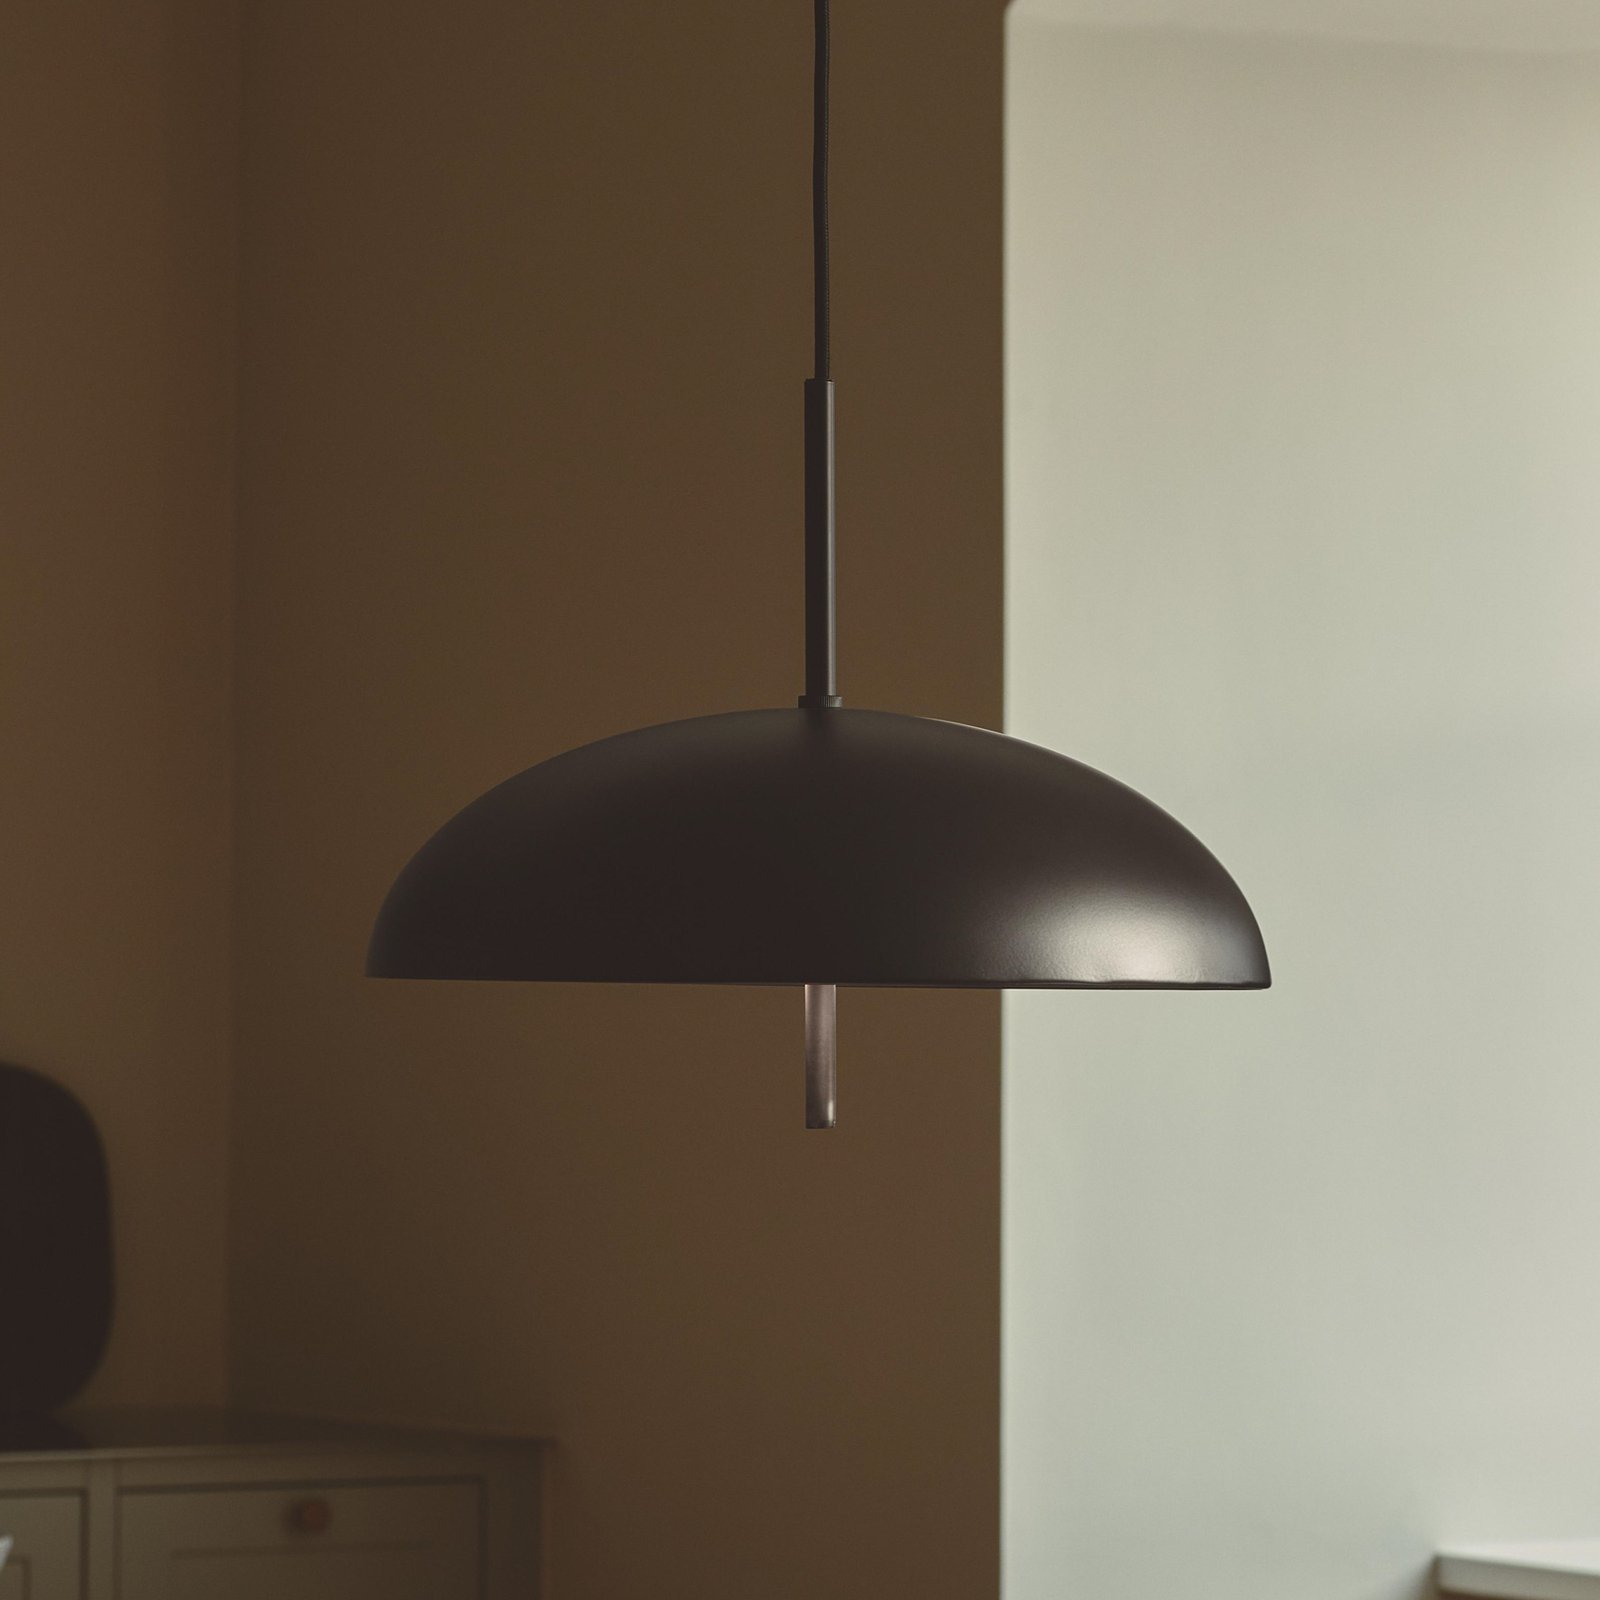 Versale hanglamp, zwart, Ø 35 cm, metaal, 2 x E27